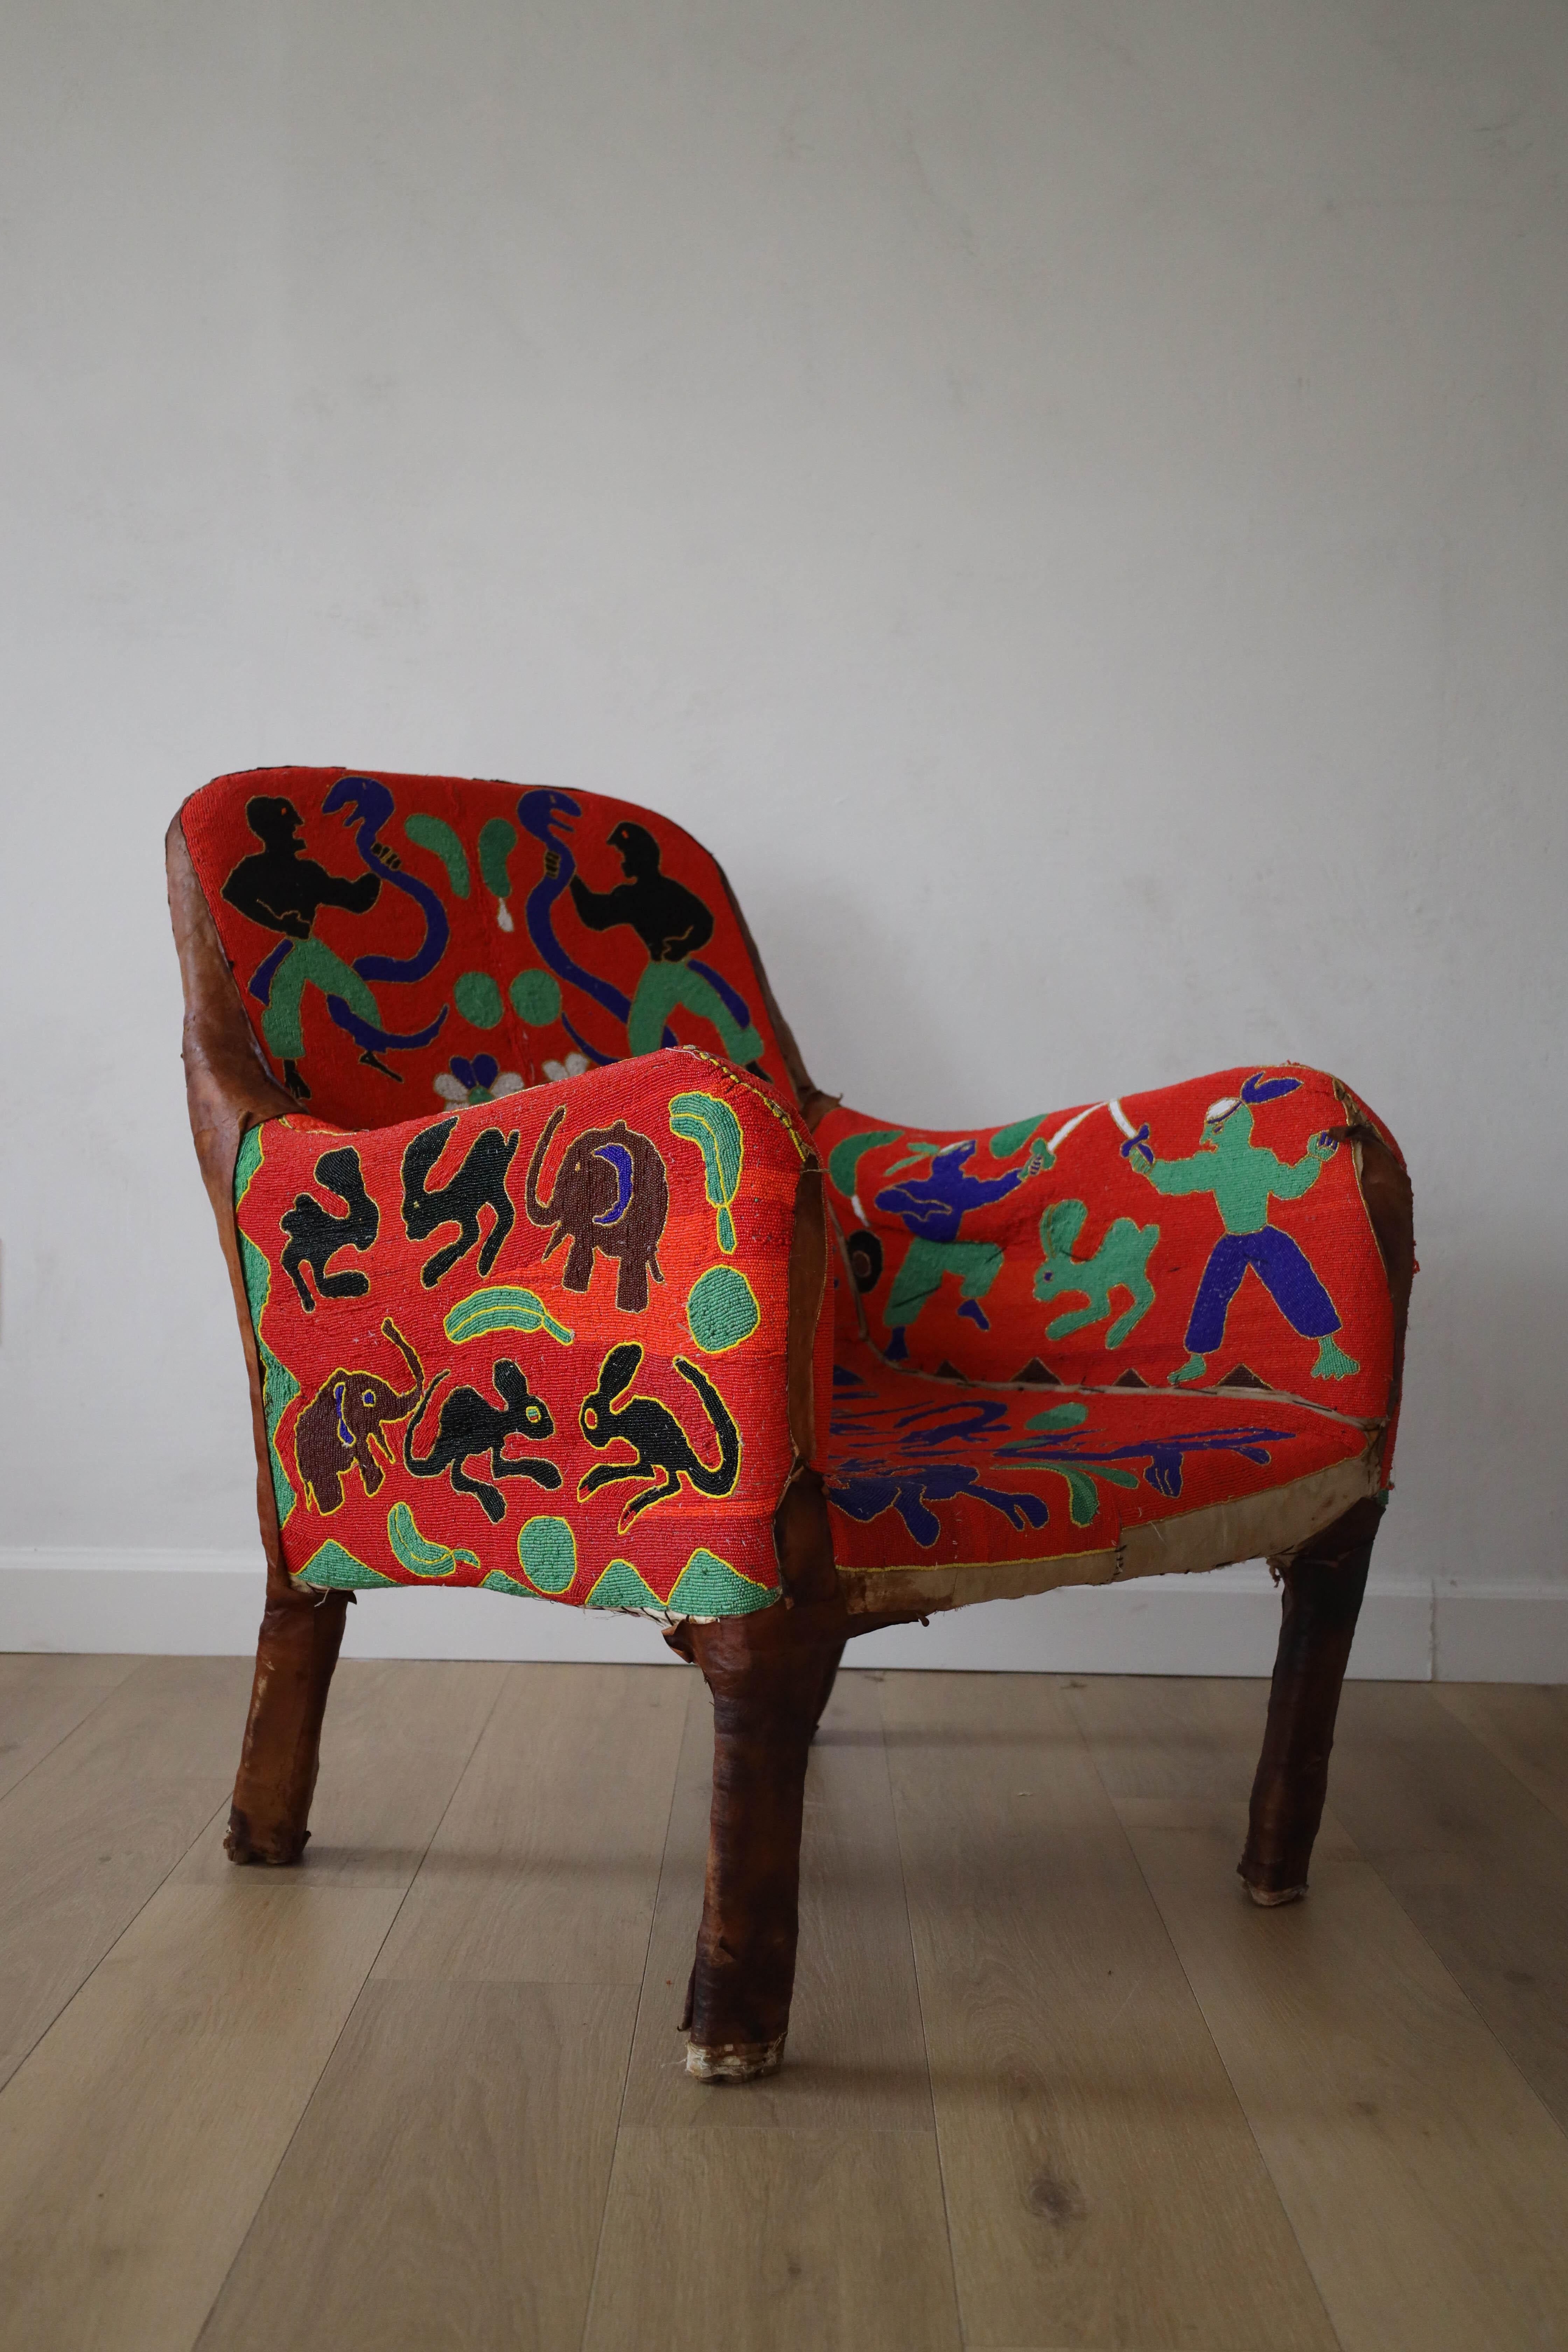 Régalez-vous avec cette œuvre d'art : La chaise Yoruba. Originaire du Nigeria, cette chaise est créée avec des milliers de perles cousues à la main, ce qui prend en moyenne trois mois. Cette chaise Yoruba particulière a une forme, un motif et une